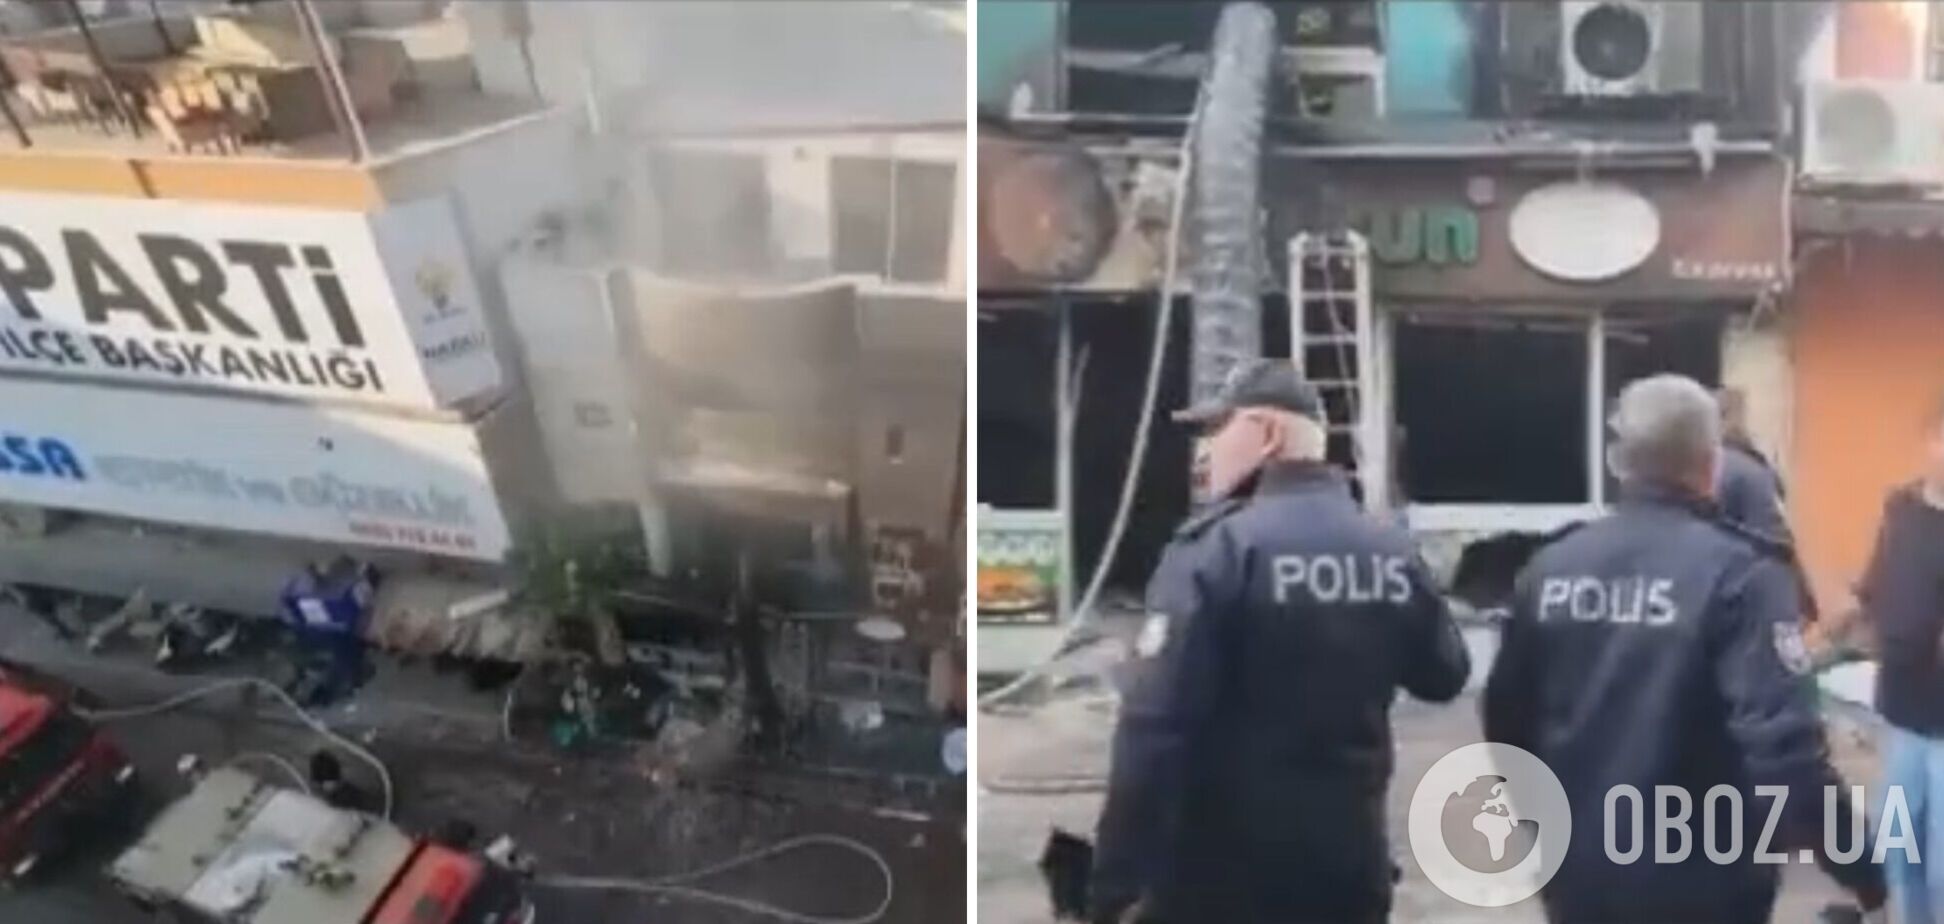 В турецком городе Айдын прогремел взрыв в ресторане: известно о семи погибших. Фото и видео